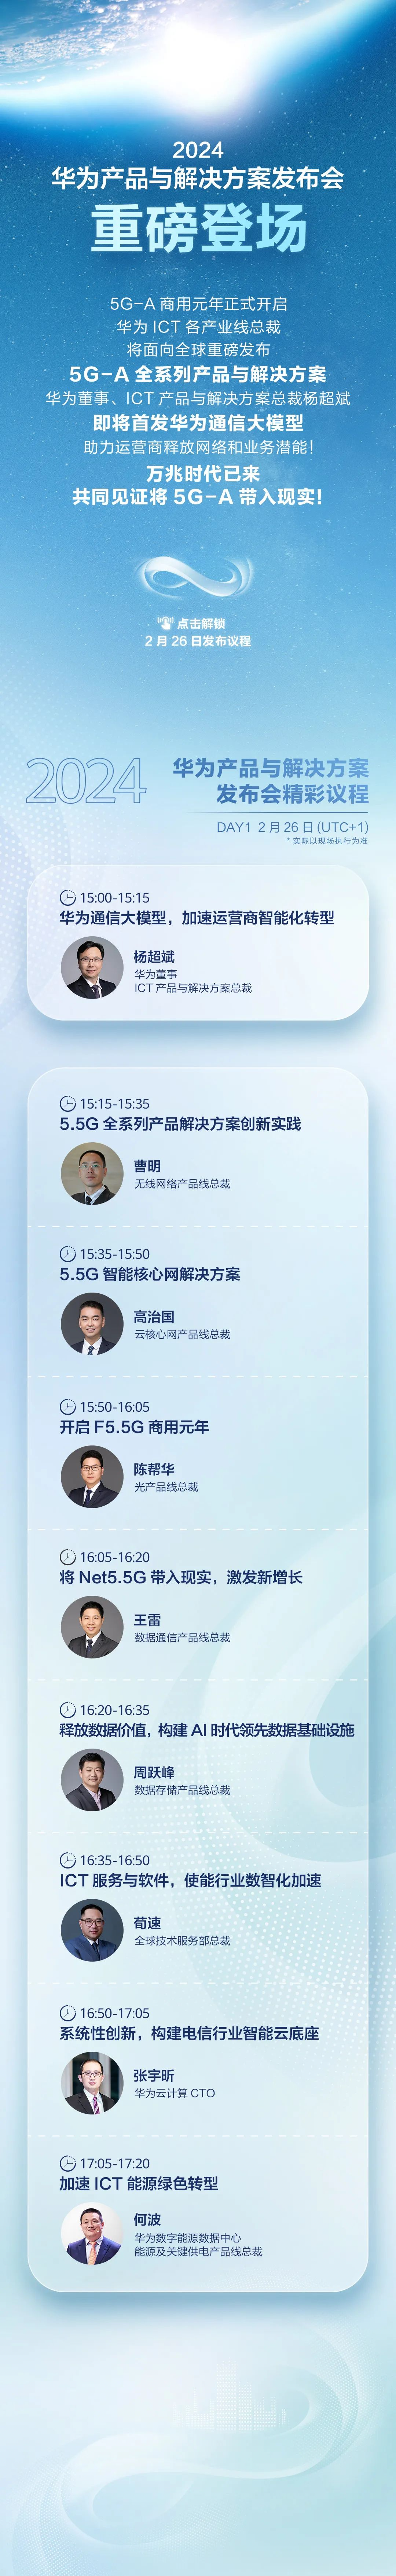 华为宣布 2 月 26 日 MWC 2024 发布 5G-A 全系列产品与解决方案，首发华为通信大模型